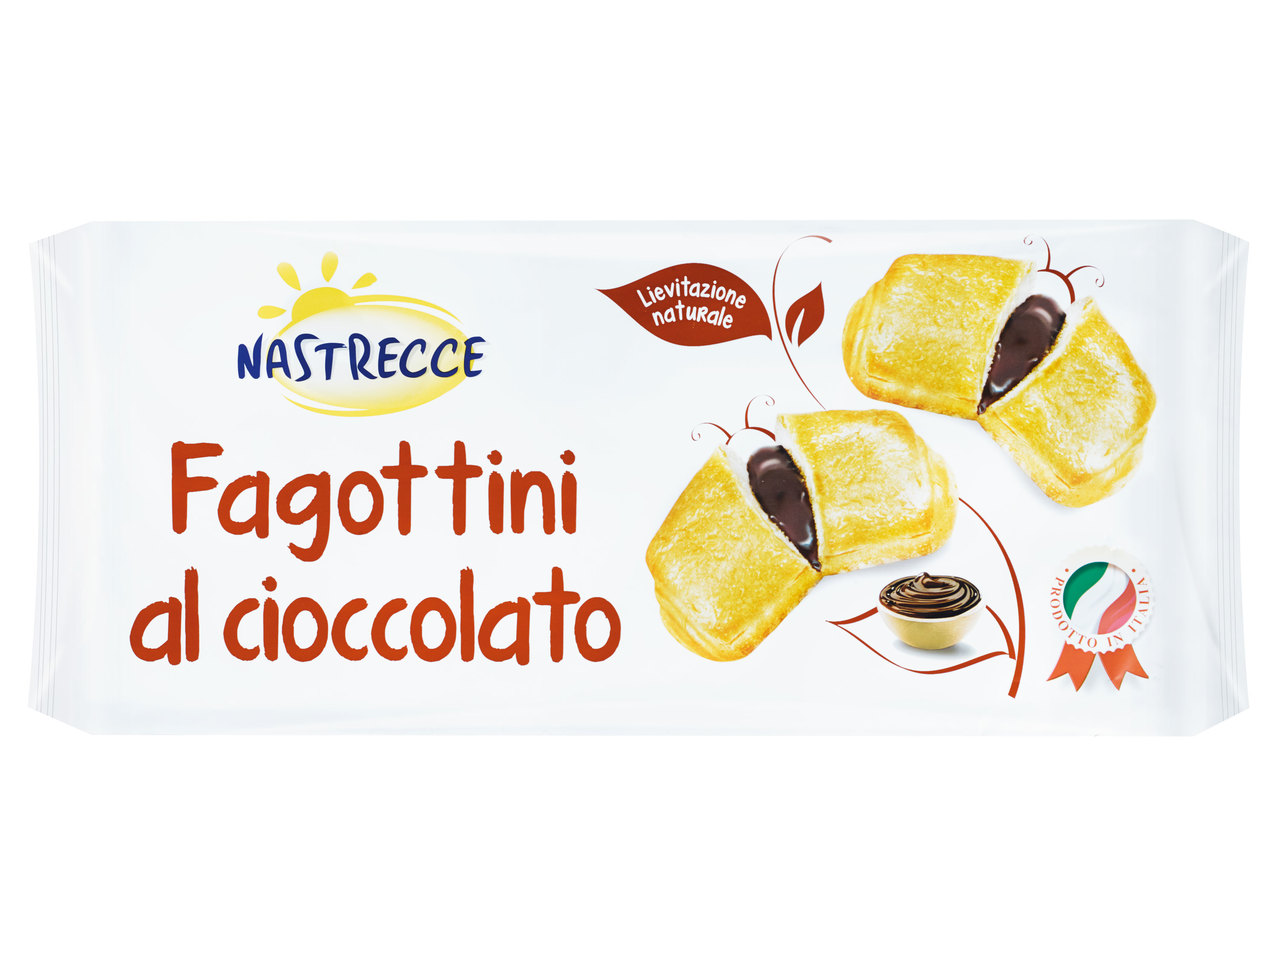 NASTRECCE Fagottini al cioccolato